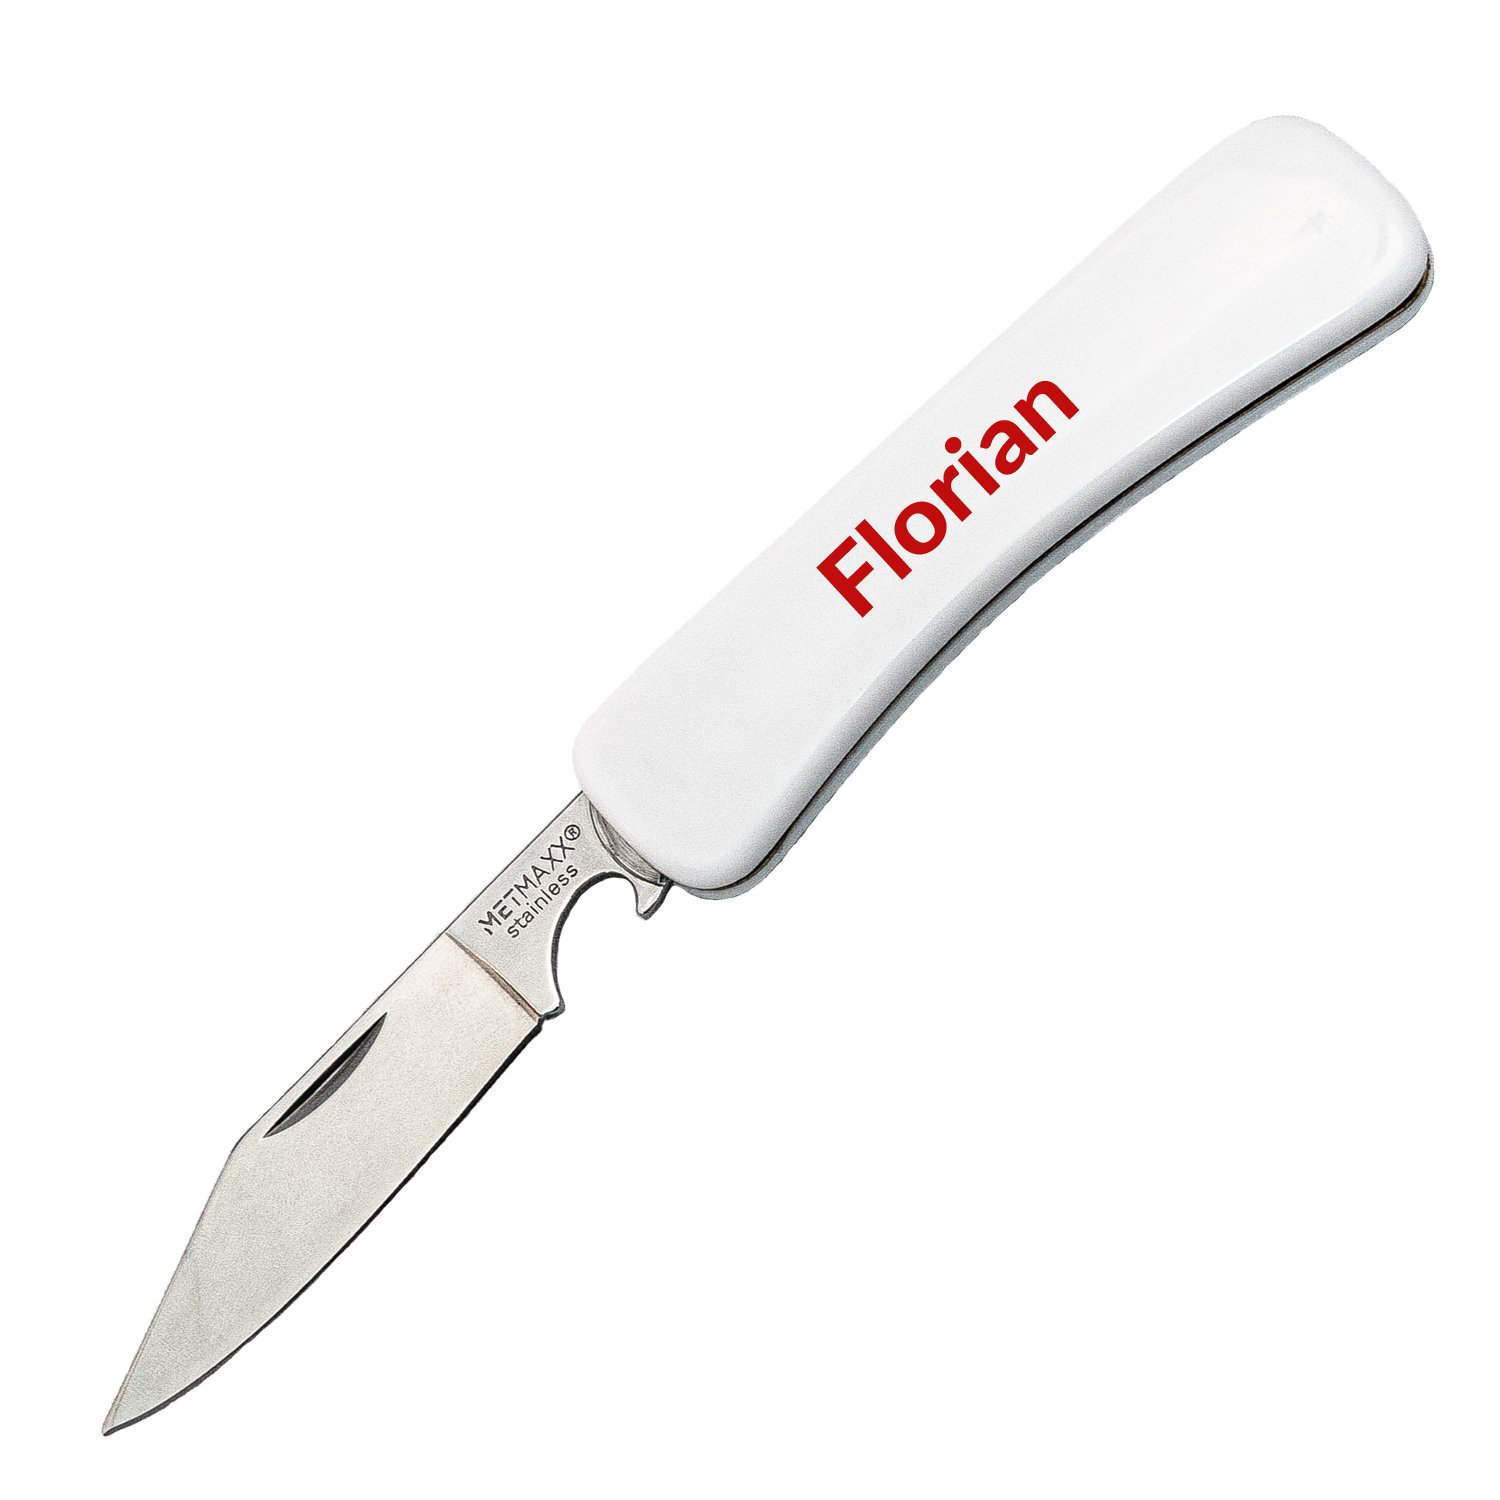 Messer von MetMaxx -Weiß mit Wunschname